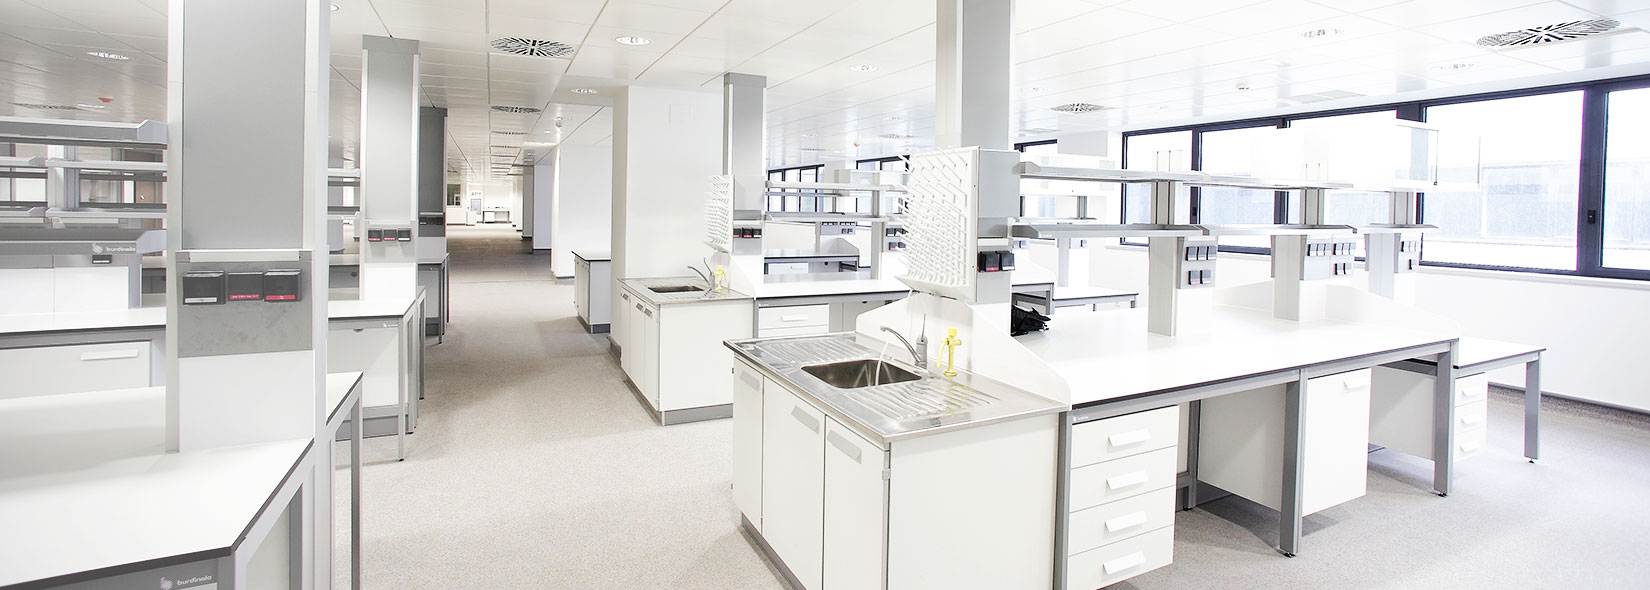 Consultar esponja necesario Mobiliario de laboratorio | Burdinola: Laboratorios seguros y eficientes